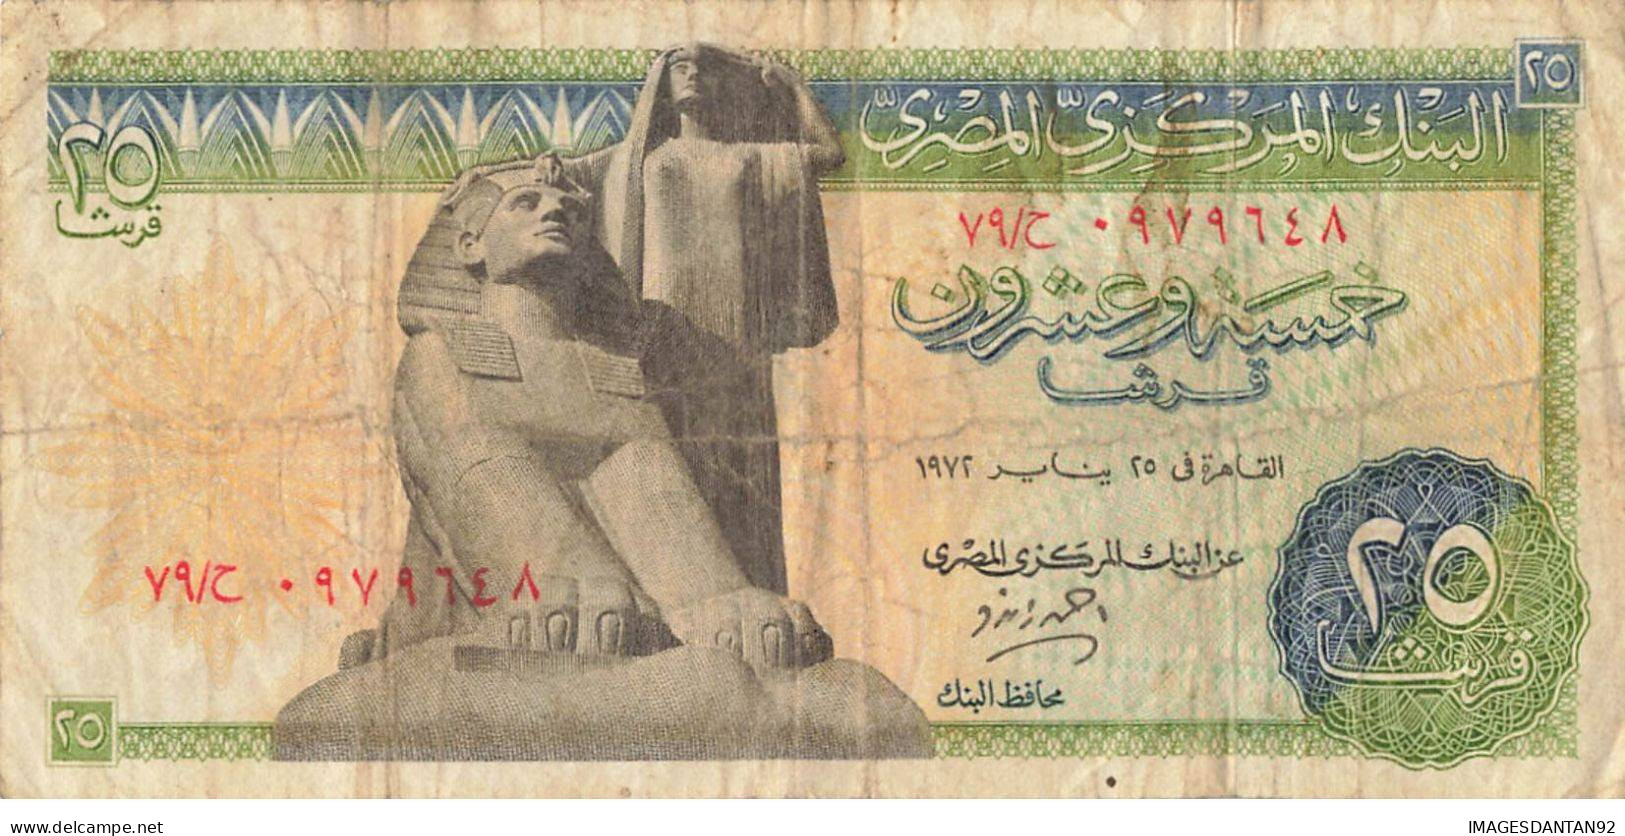 EGYPTE EGYPT 17 BANK NOTE PIASTRE POUND - Egitto